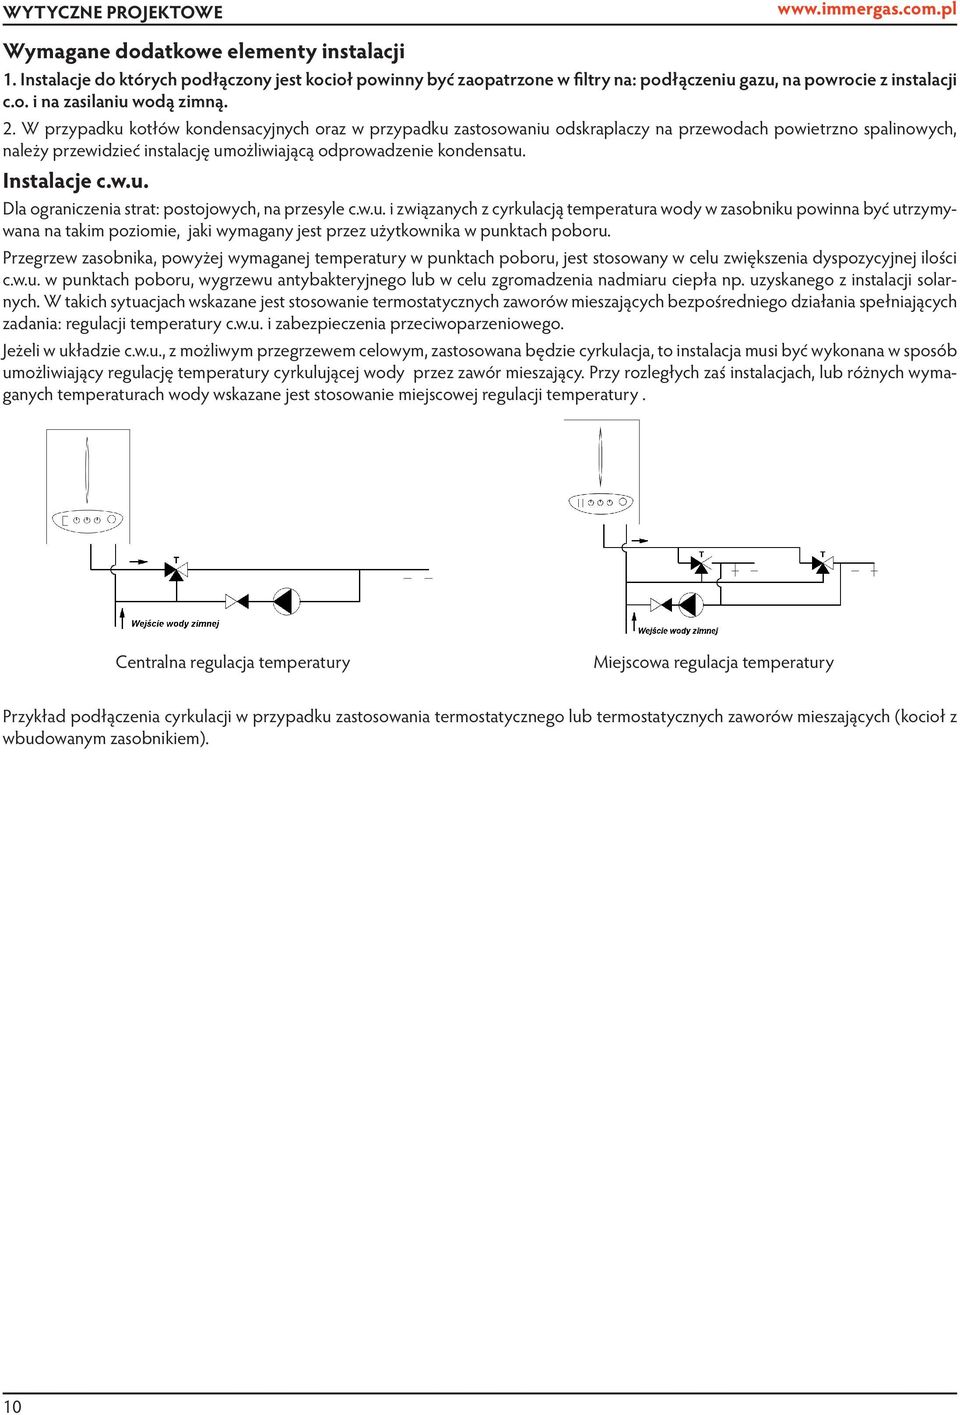 W przypadku kotłów kondensacyjnych oraz w przypadku zastosowaniu odskraplaczy na przewodach powietrzno spalinowych, należy przewidzieć instalację umożliwiającą odprowadzenie kondensatu. Instalacje c.